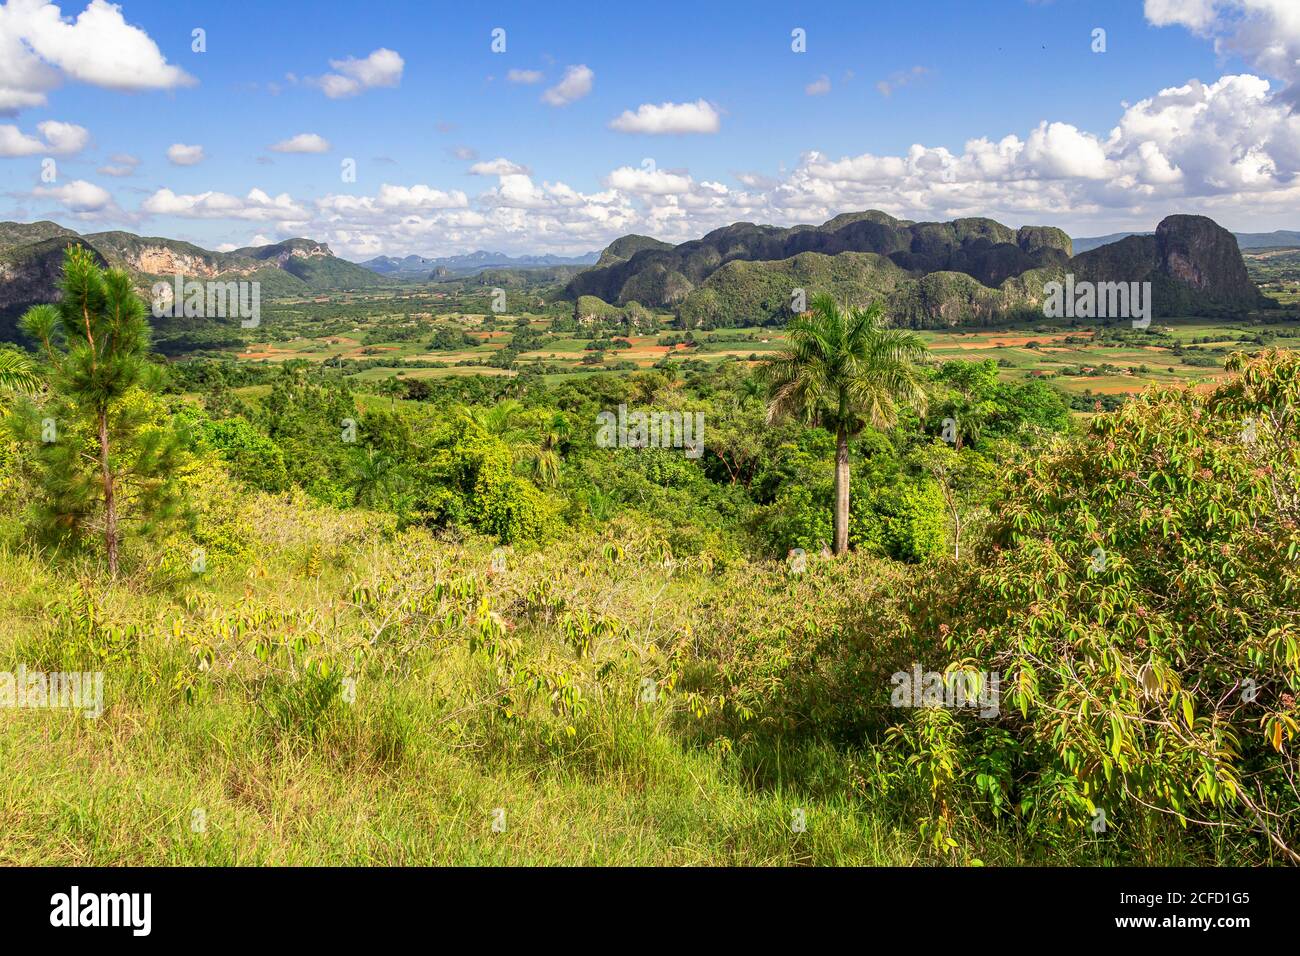 Vue depuis le point de vue de Los Aquaticos sur la vallée de Vinales (Valle de Vinales), province de Pinar del Rio, Cuba Banque D'Images